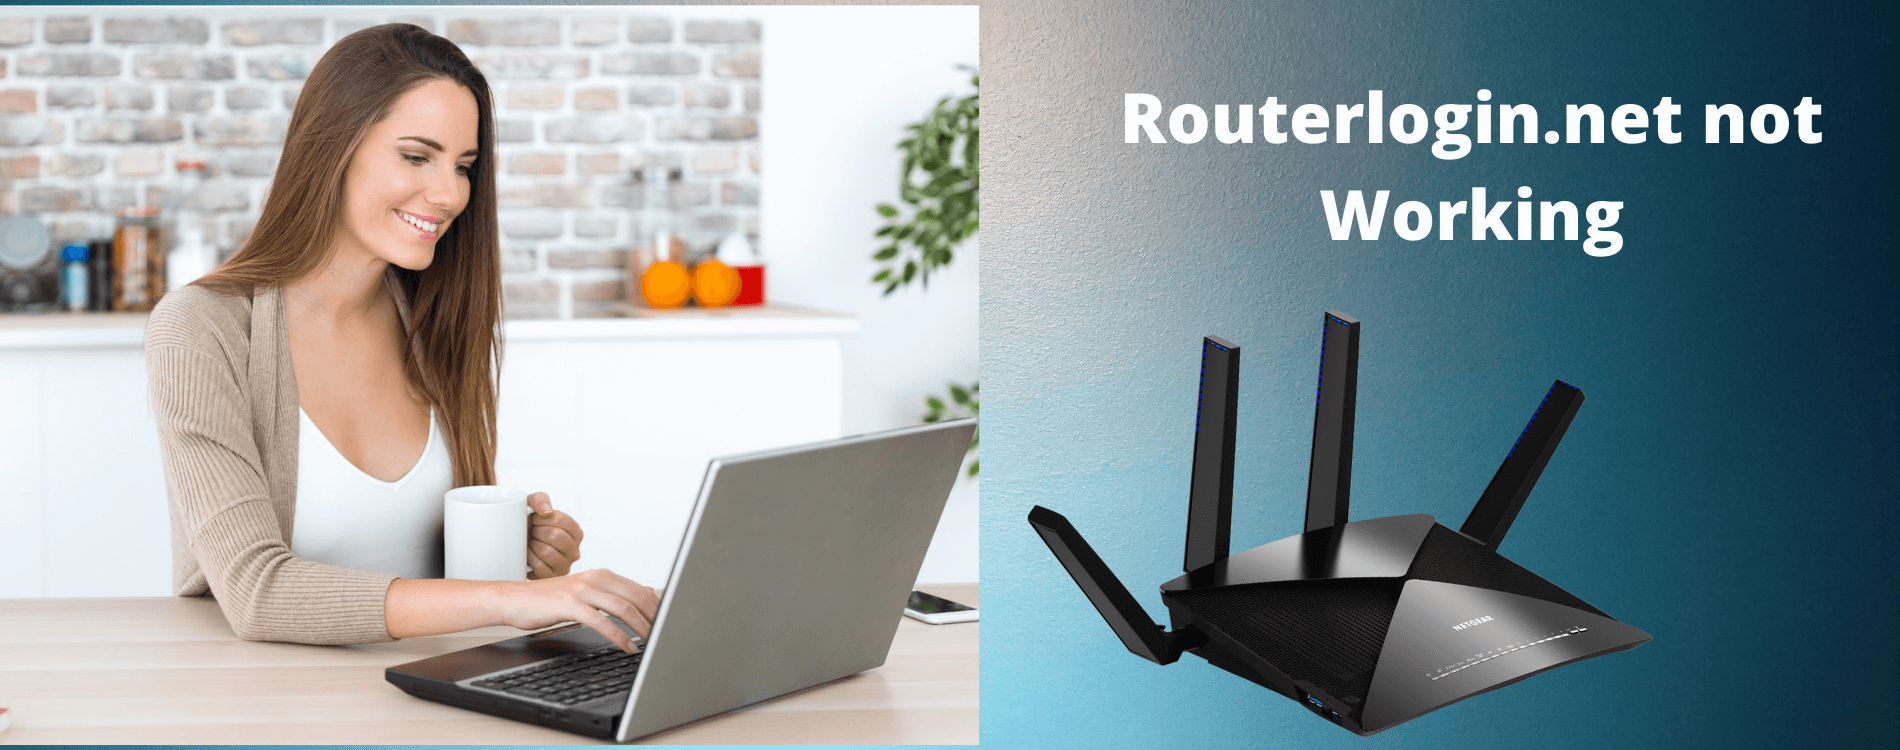 Netgear Router Login Routerlogin.net